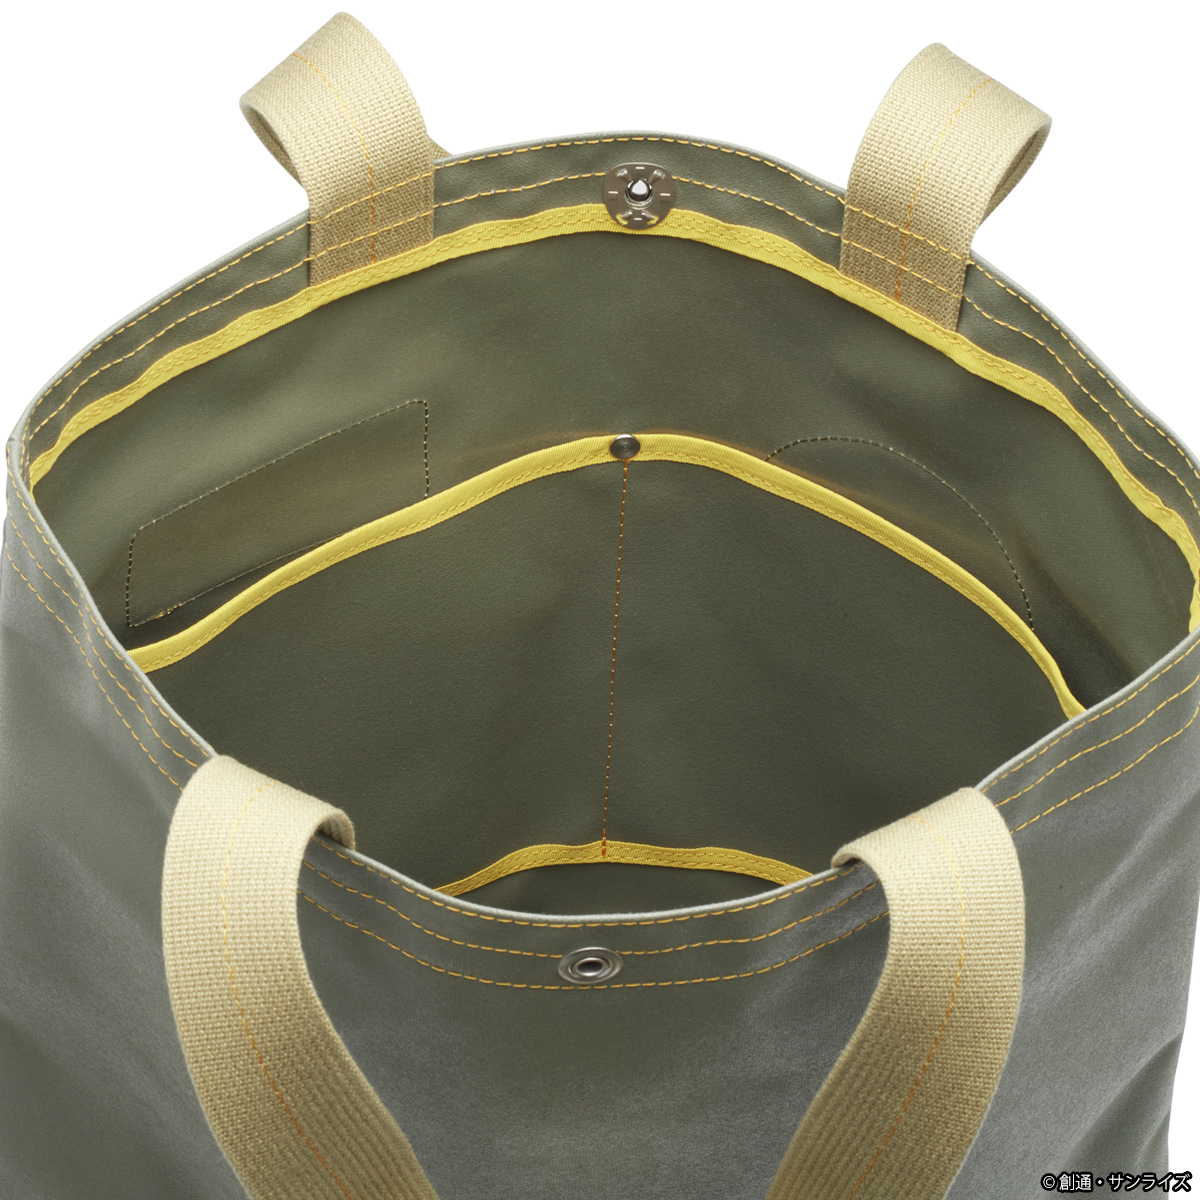 横浜発の帆布鞄を展開する「横濱帆布鞄」×『機動戦士ガンダム』 STRICT-G JAPANとの初コラボレーションアイテムが登場！